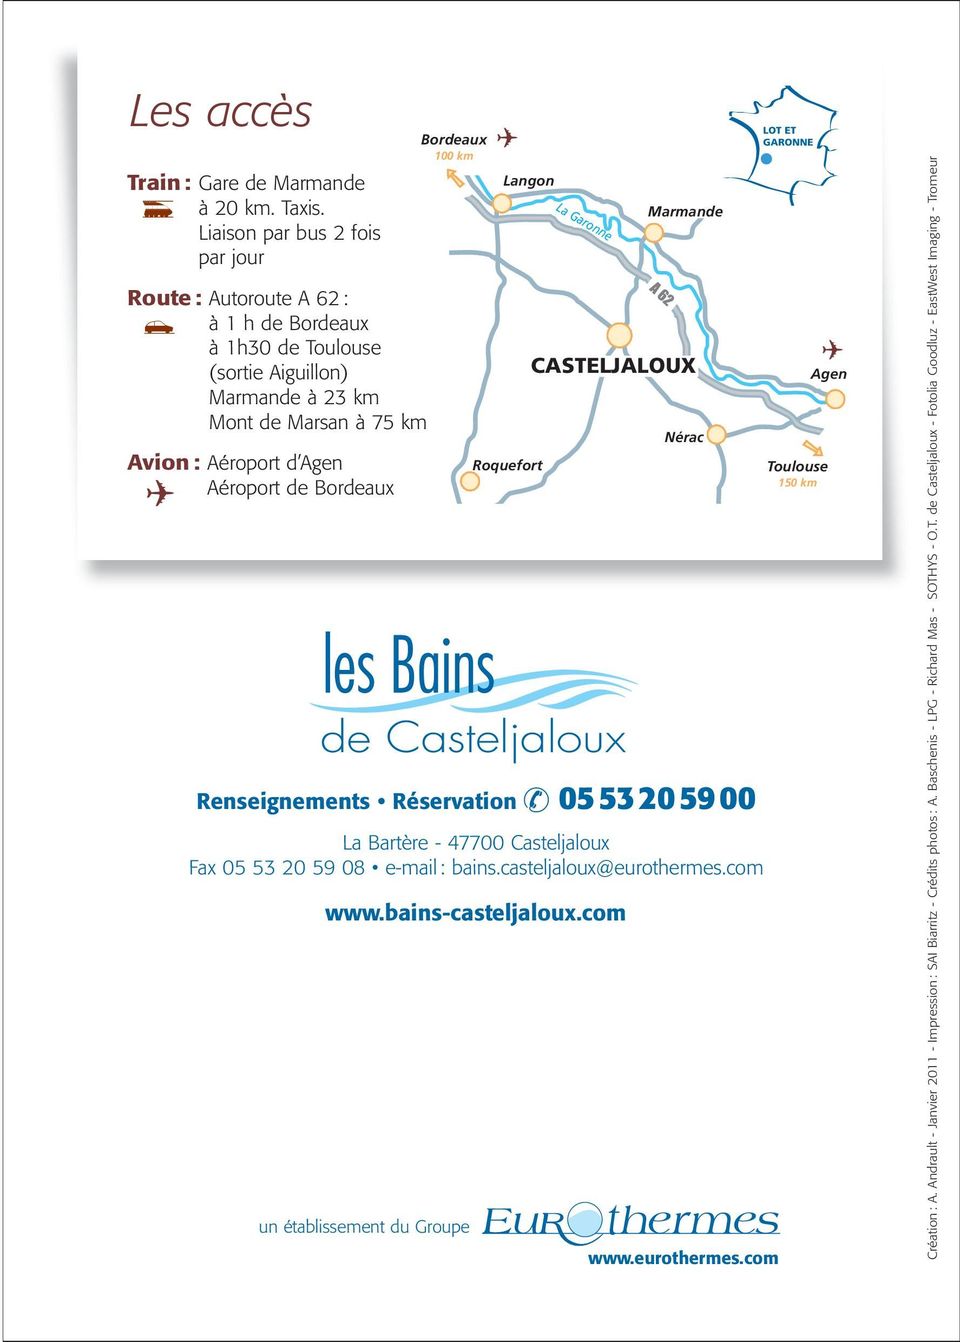 Bordeaux 100 km les Bains de Casteljaloux Renseignements Réservation 05 53 20 59 00 La Bartère - 47700 Casteljaloux Fax 05 53 20 59 08 e-mail : bains.casteljaloux@eurothermes.com www.